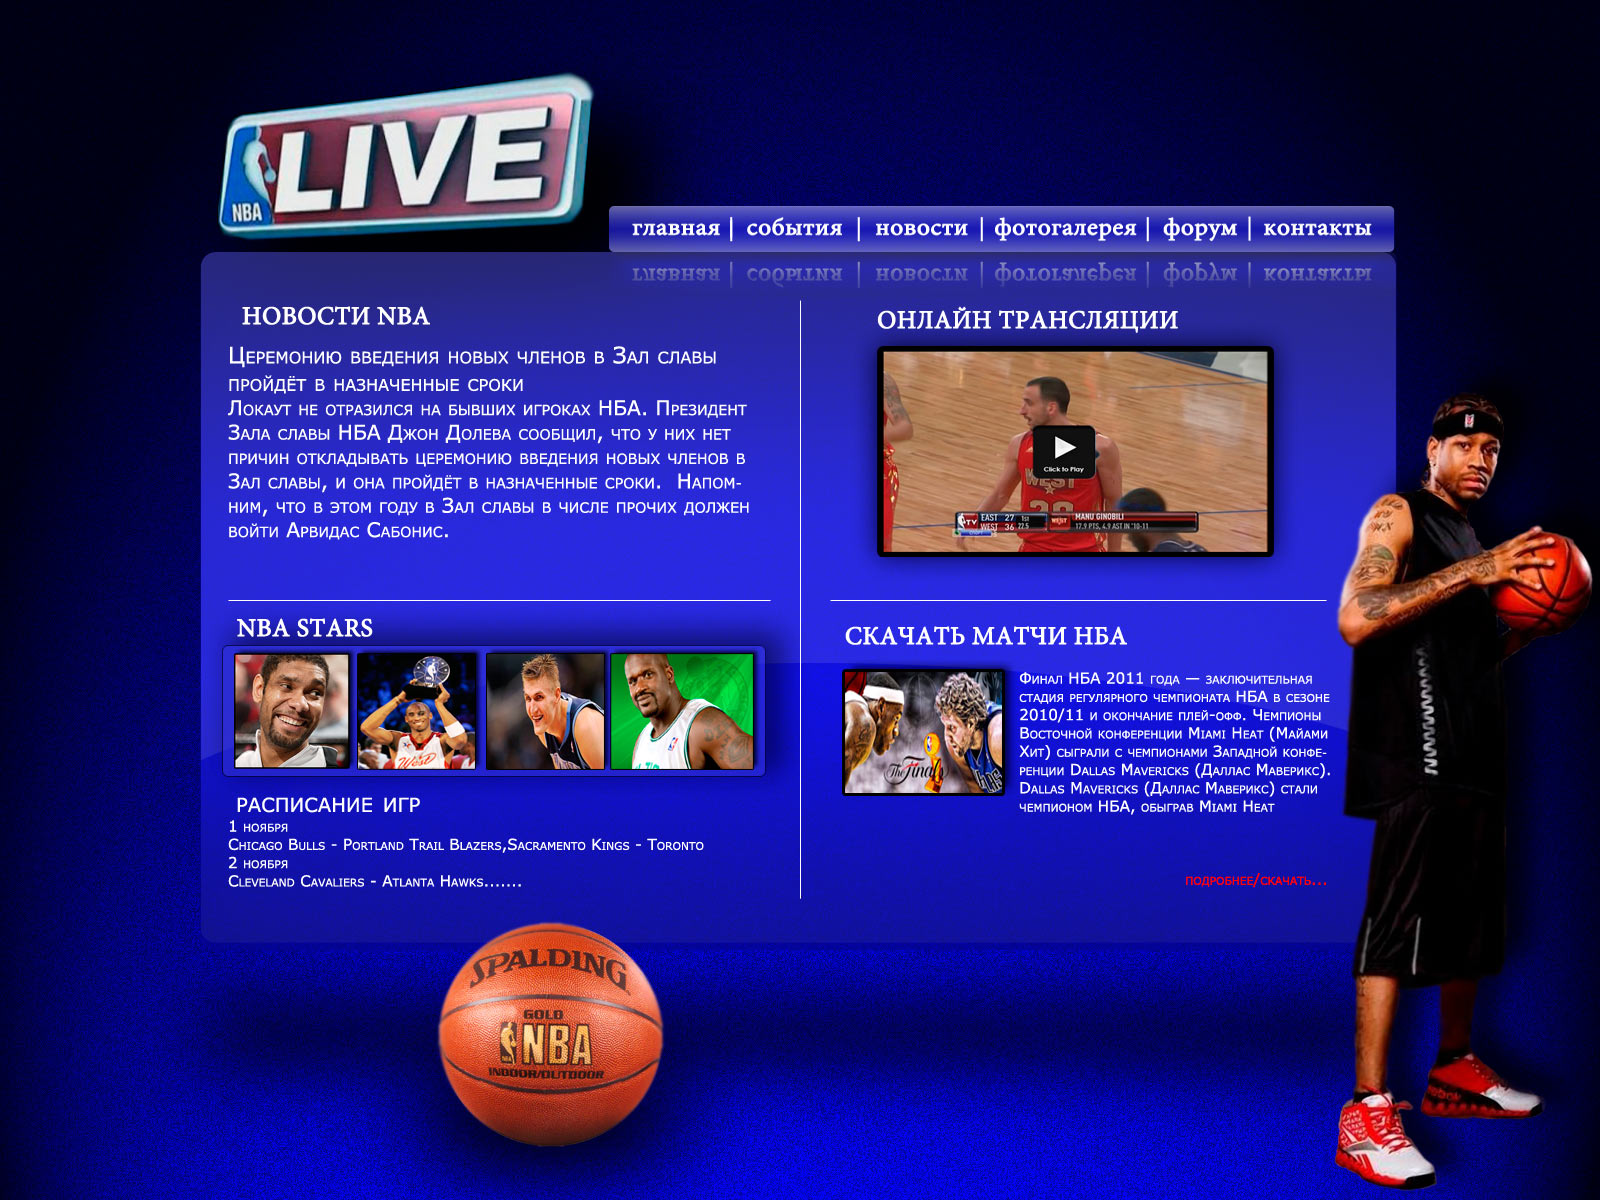 Сайт на баскетбольную тематику